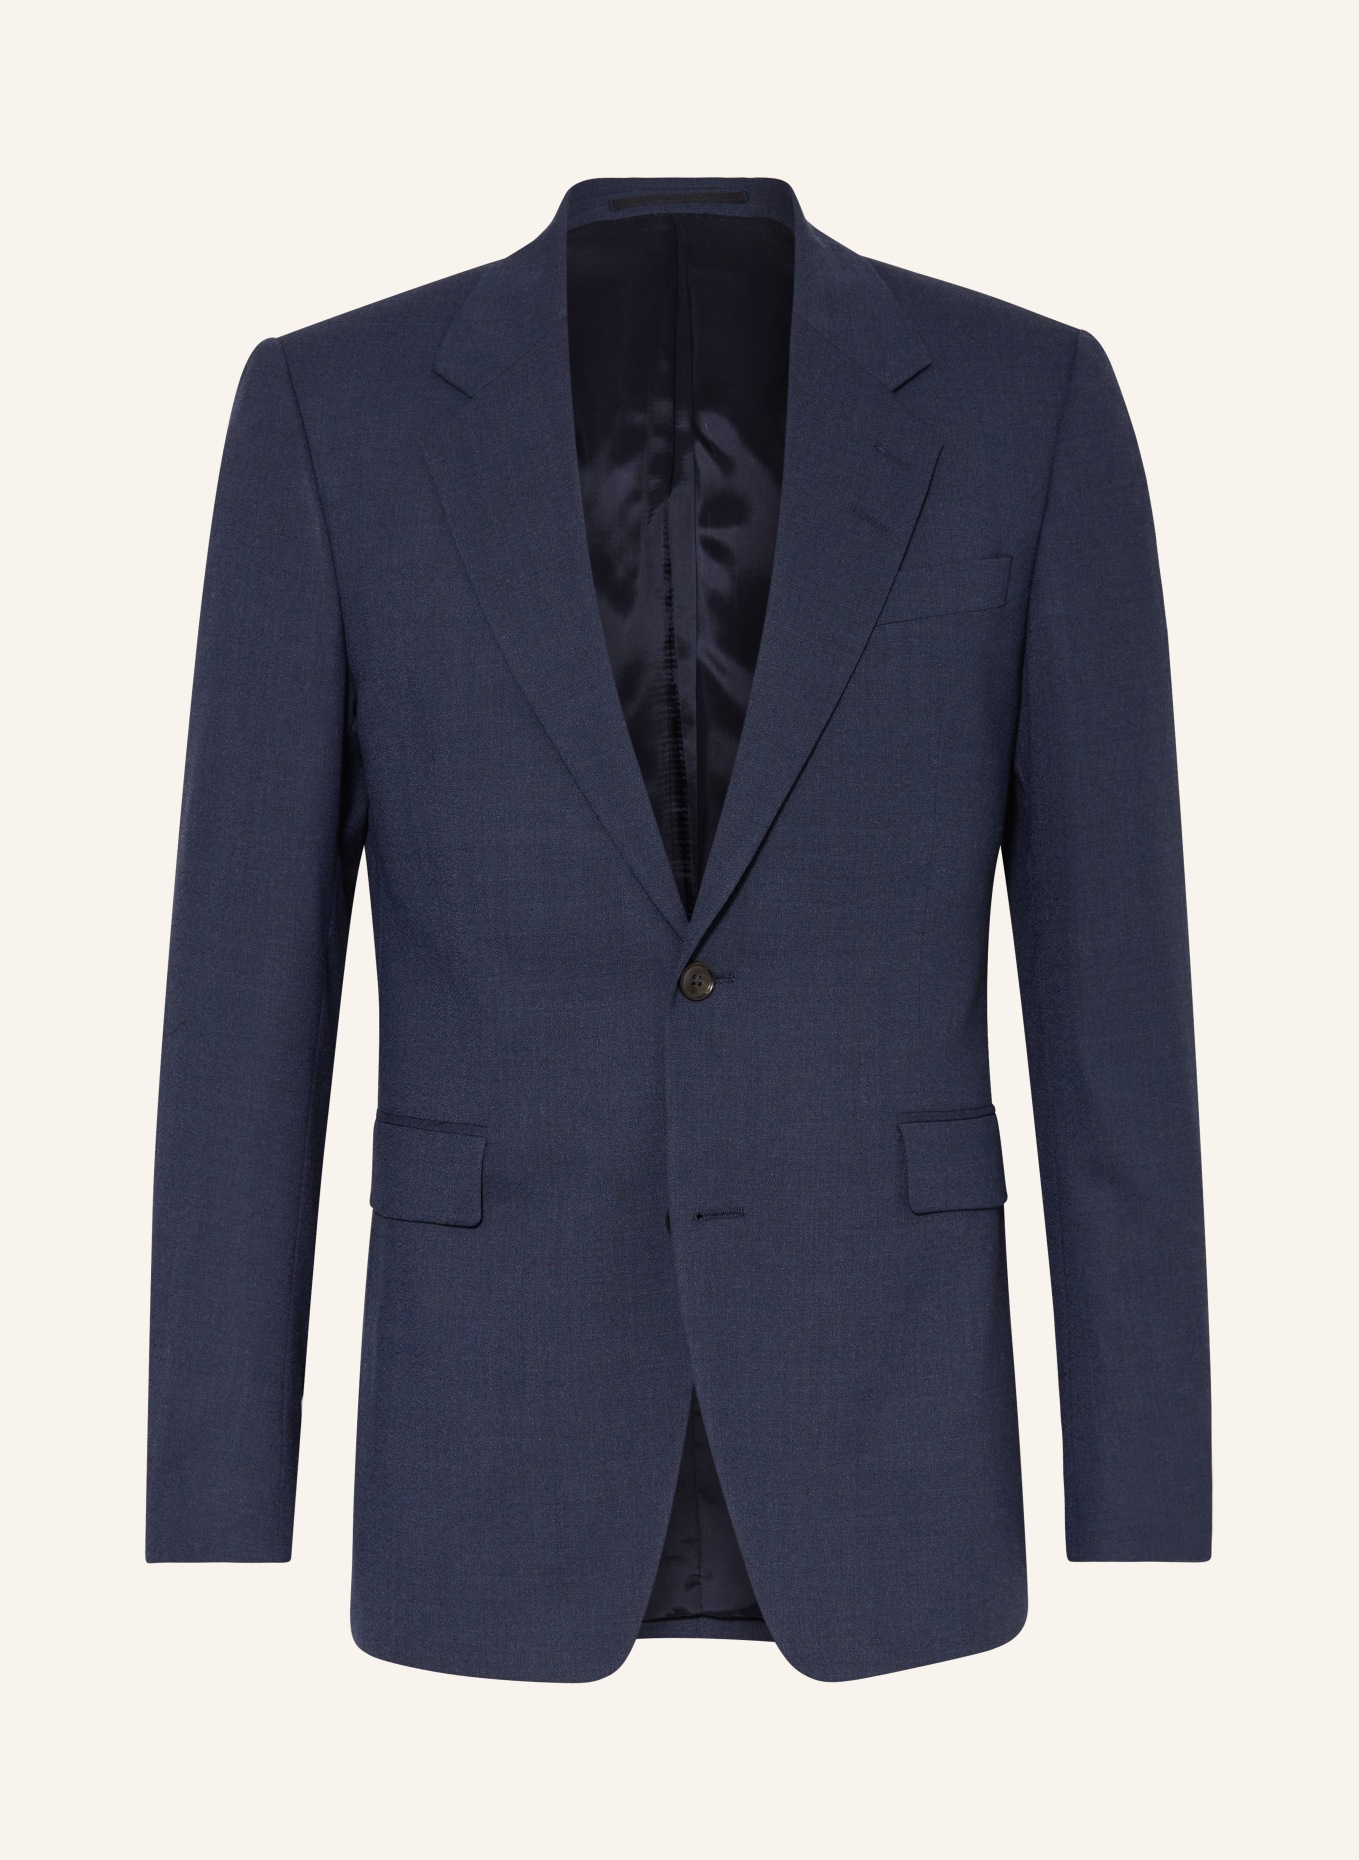 TIGER OF SWEDEN Suit jacket JULIEN regular fit, Color: 231 Dusty blue (Image 1)